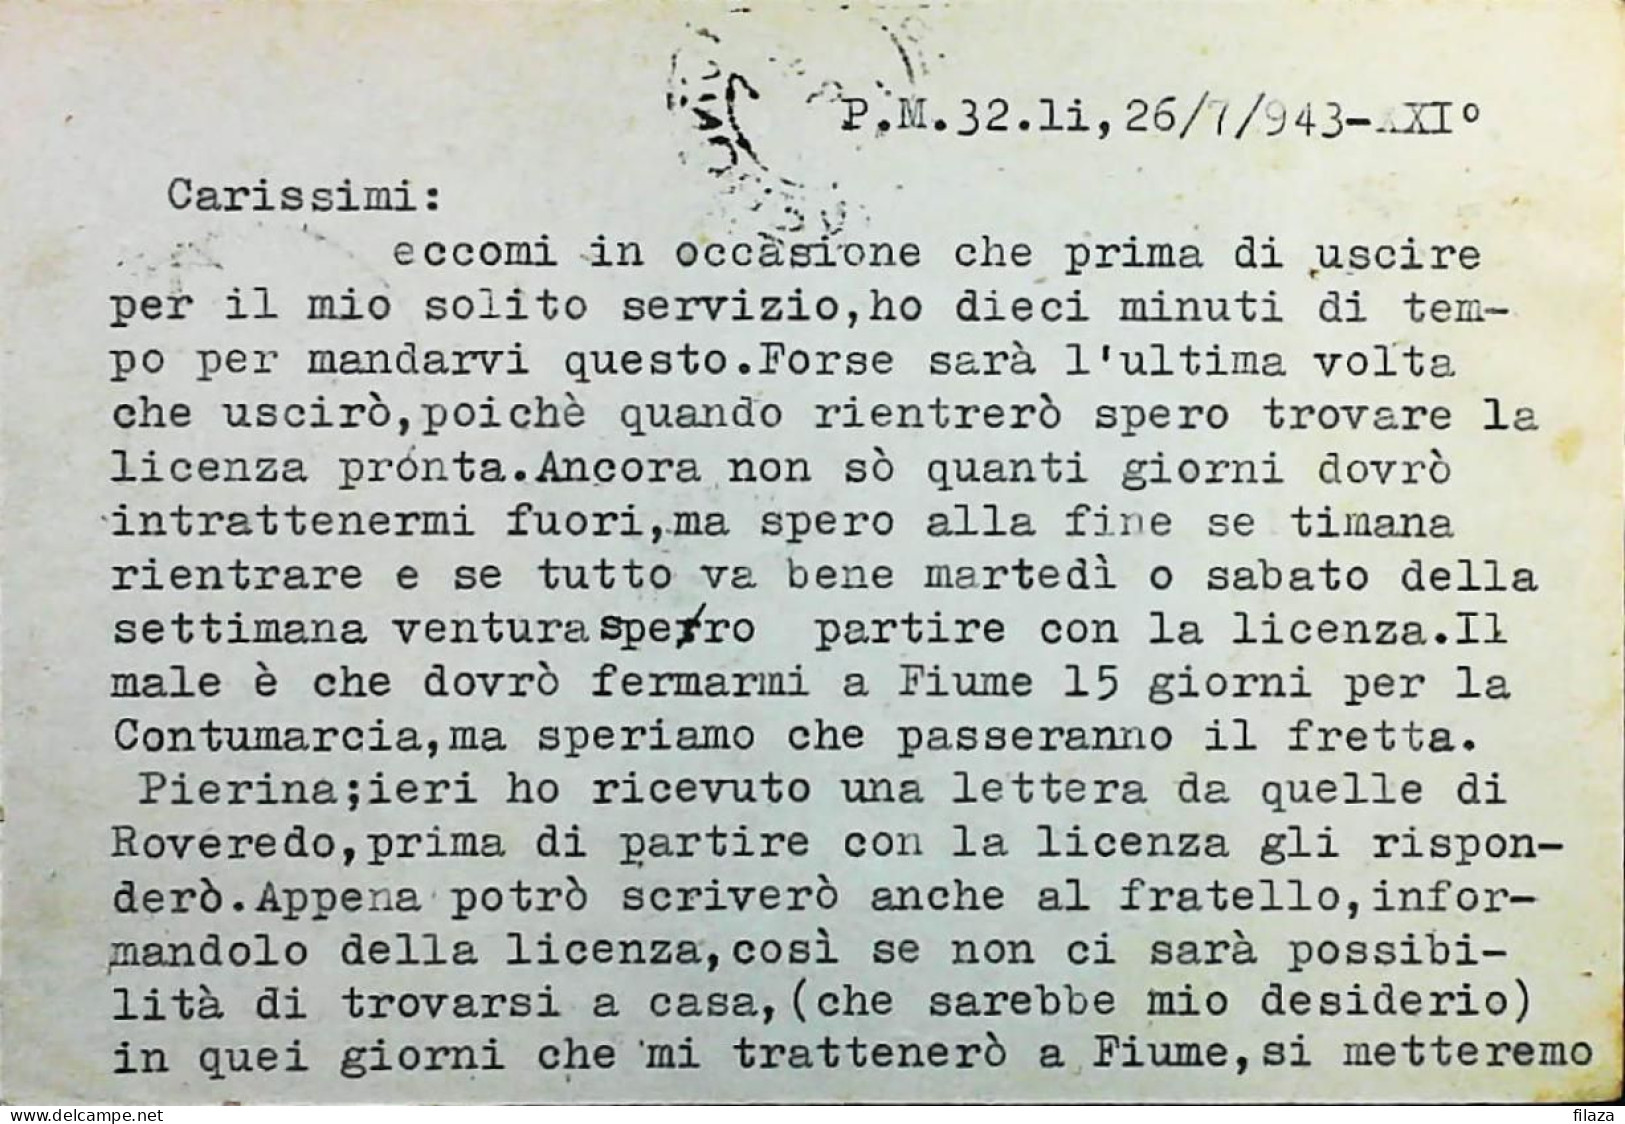 POSTA MILITARE ITALIA IN CROAZIA  - WWII WW2 - S7007 - Military Mail (PM)